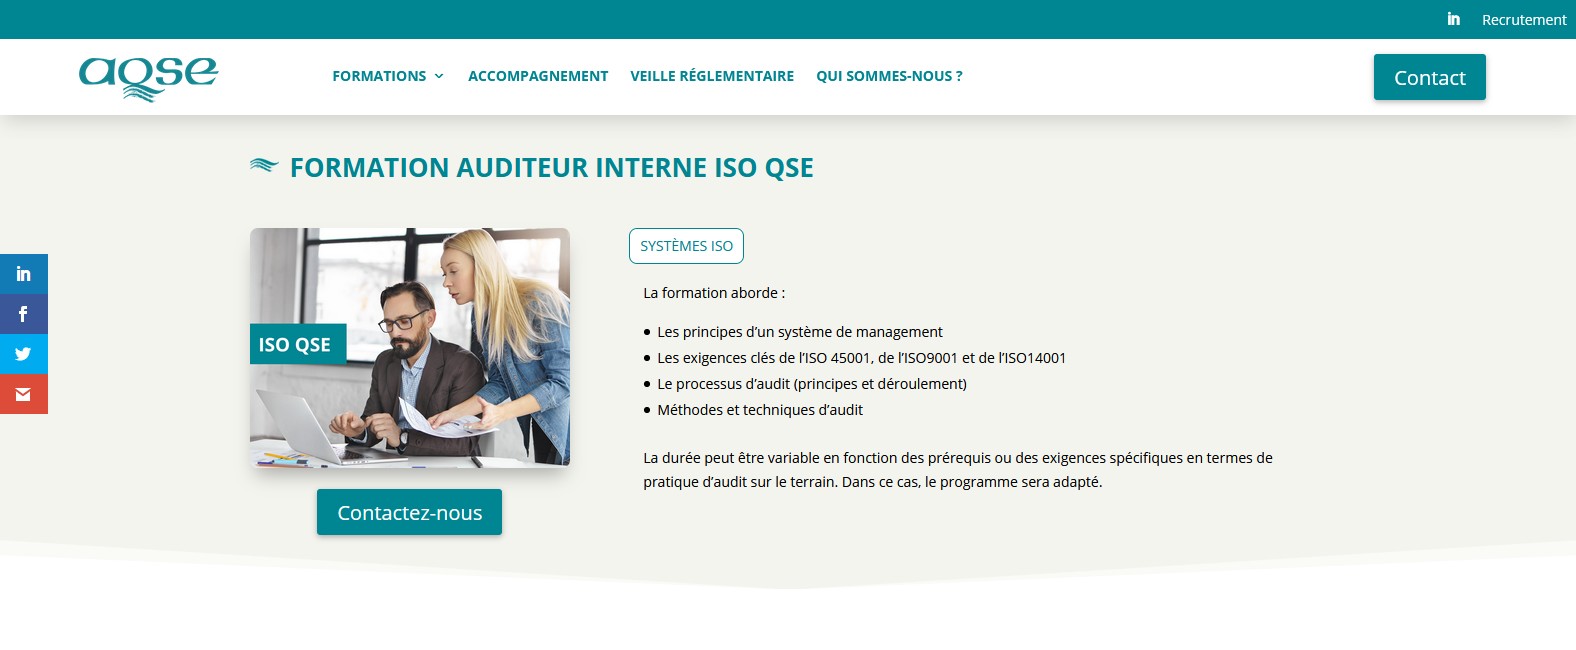 AQSE-france.fr Formation auditeur interne sécurité